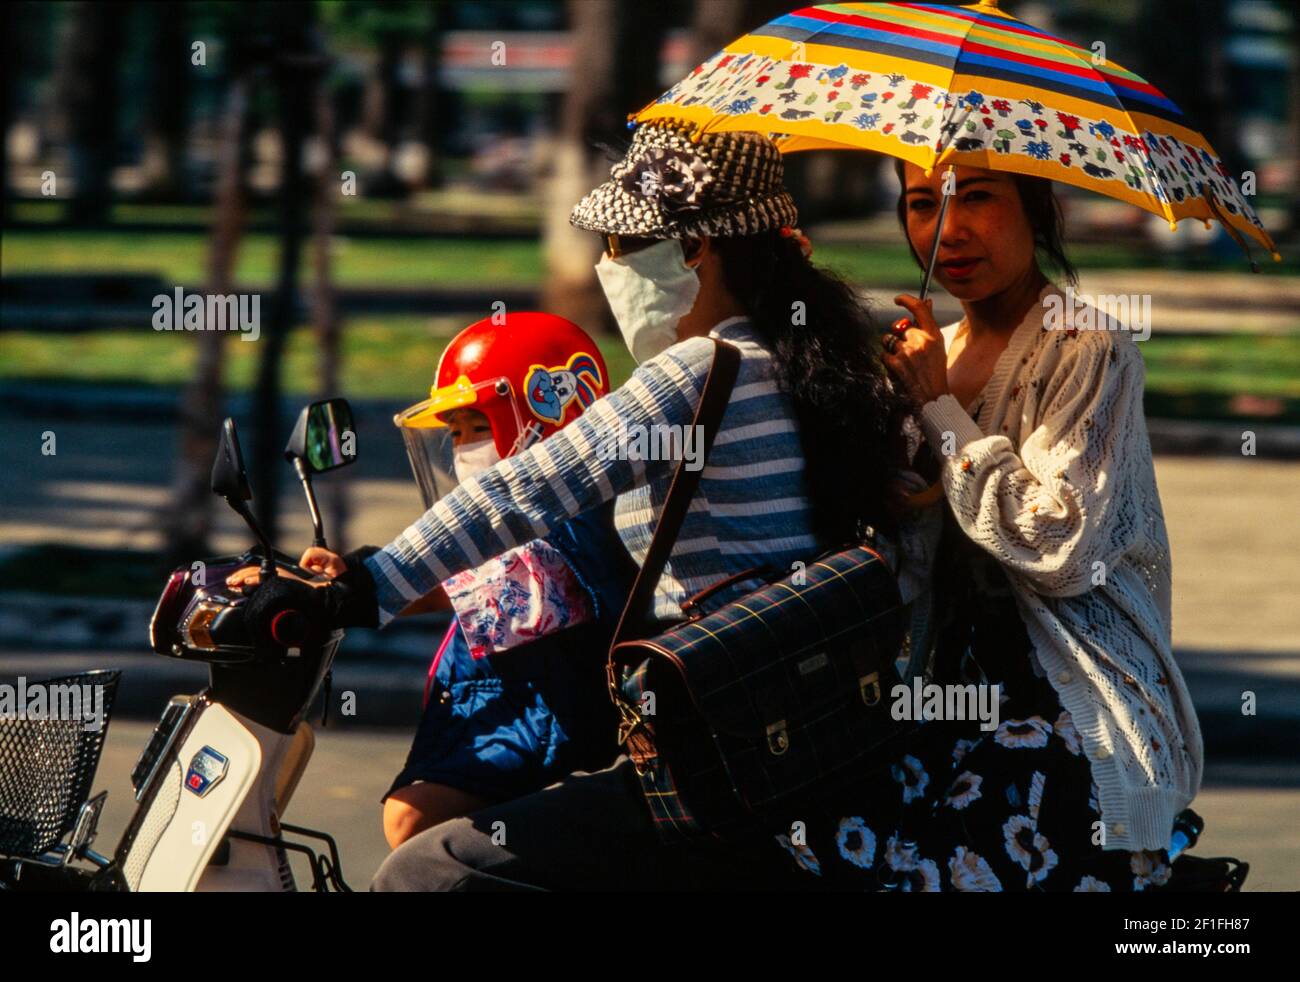 Les cycles à moteur dominent le trafic intense dans le centre de Ho Chi Minh ville, octobre 1995 Banque D'Images